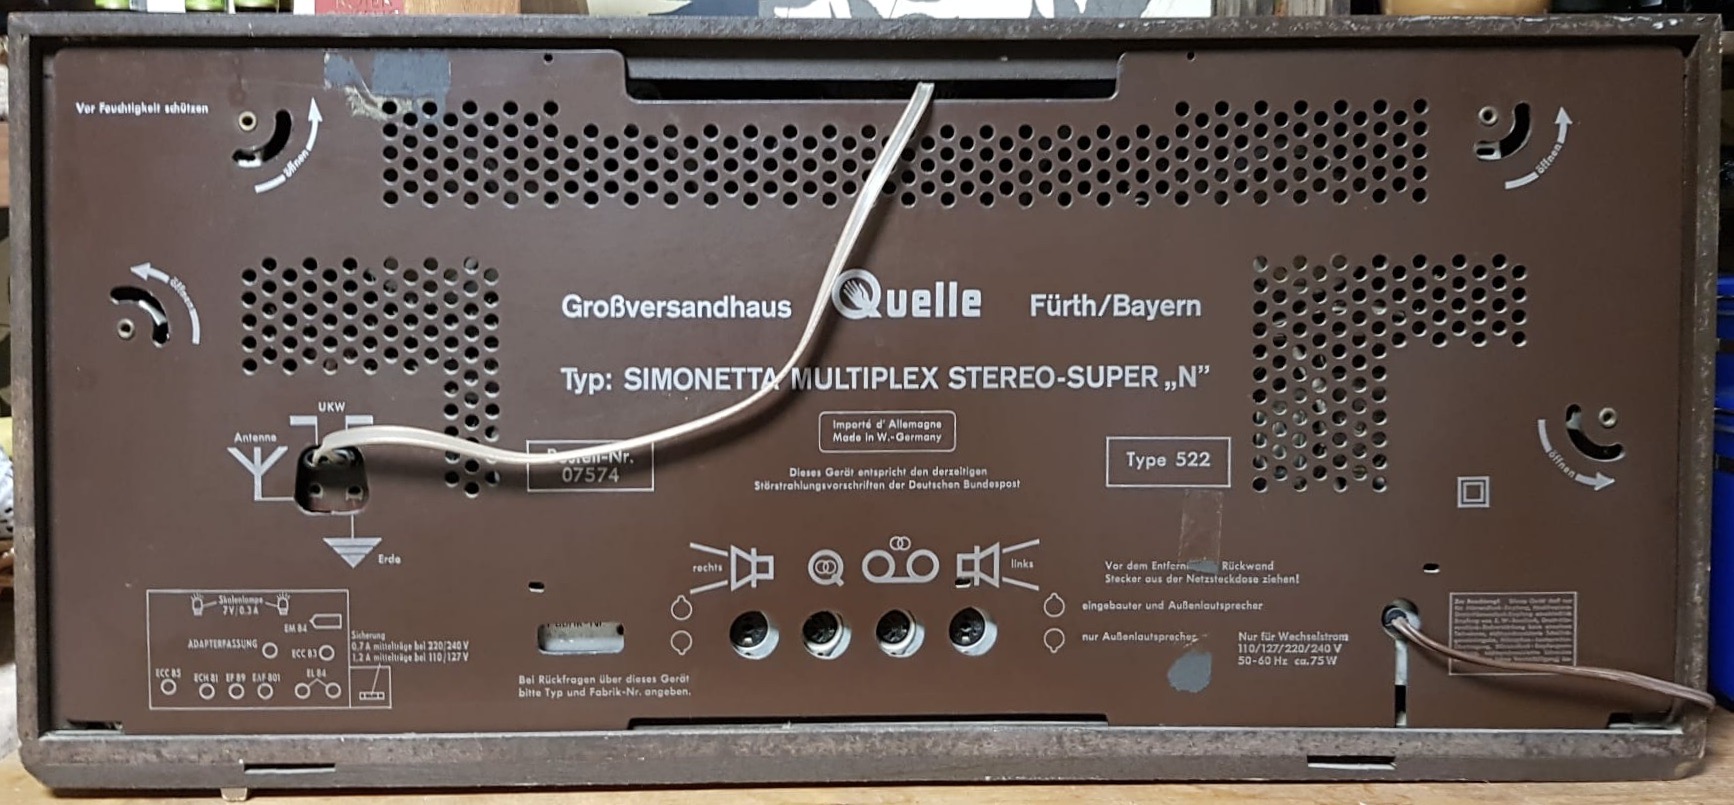 Simonetta Multiplex Stereo-Super N